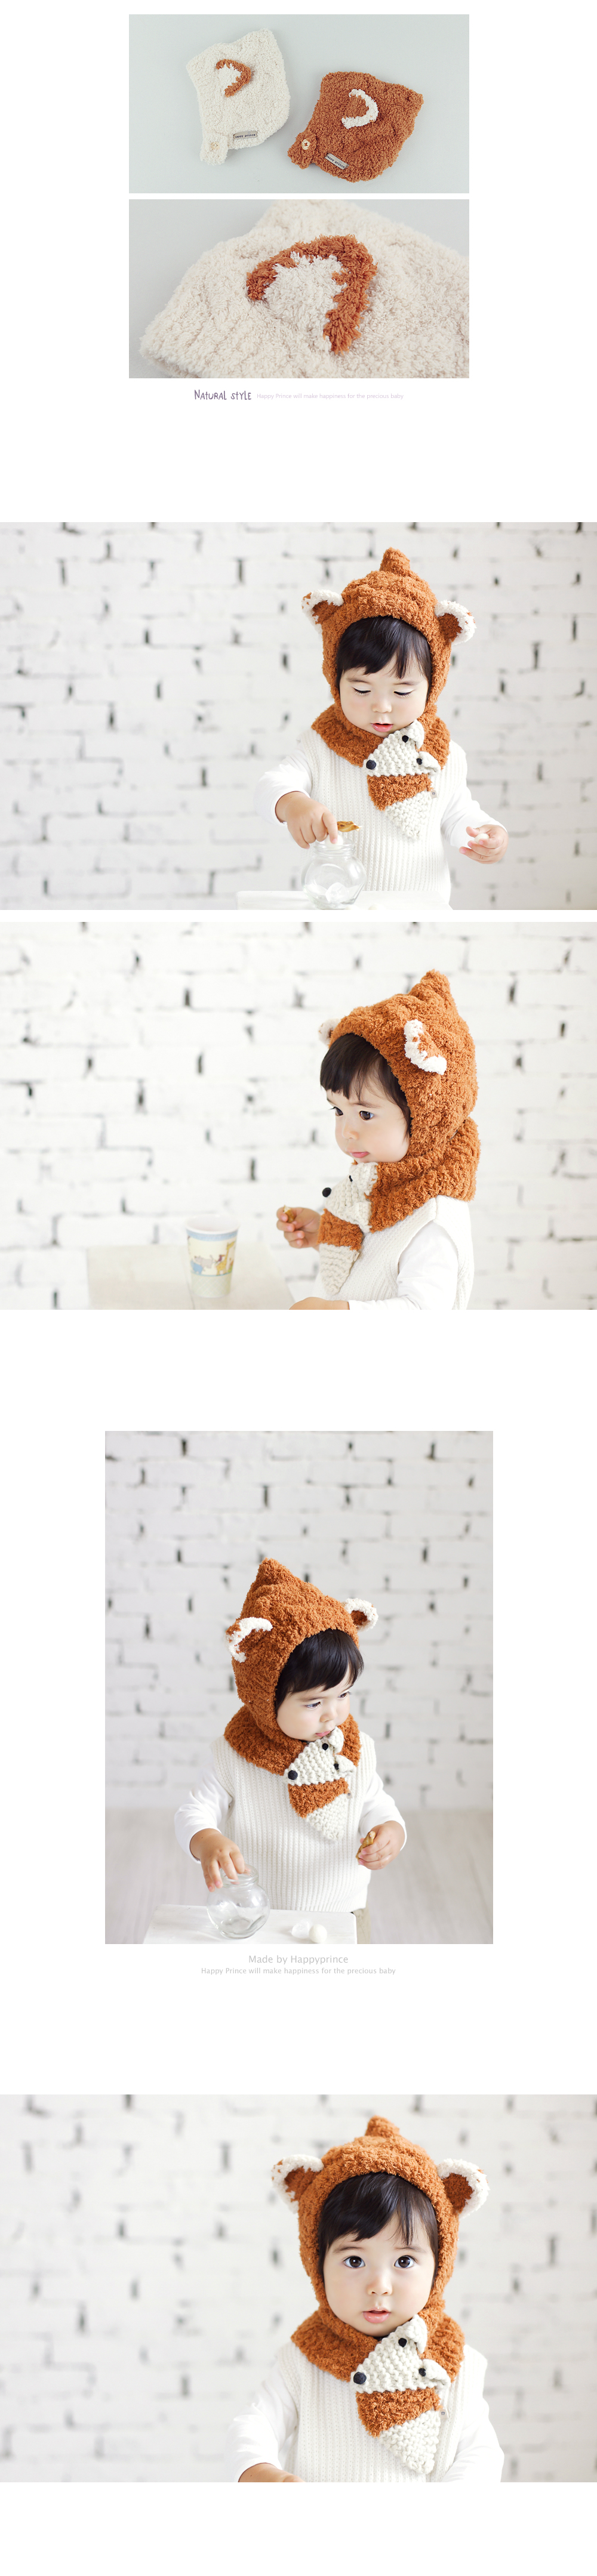 HAPPY PRINCE 軟綿綿小狐狸兒童帽 韓國製